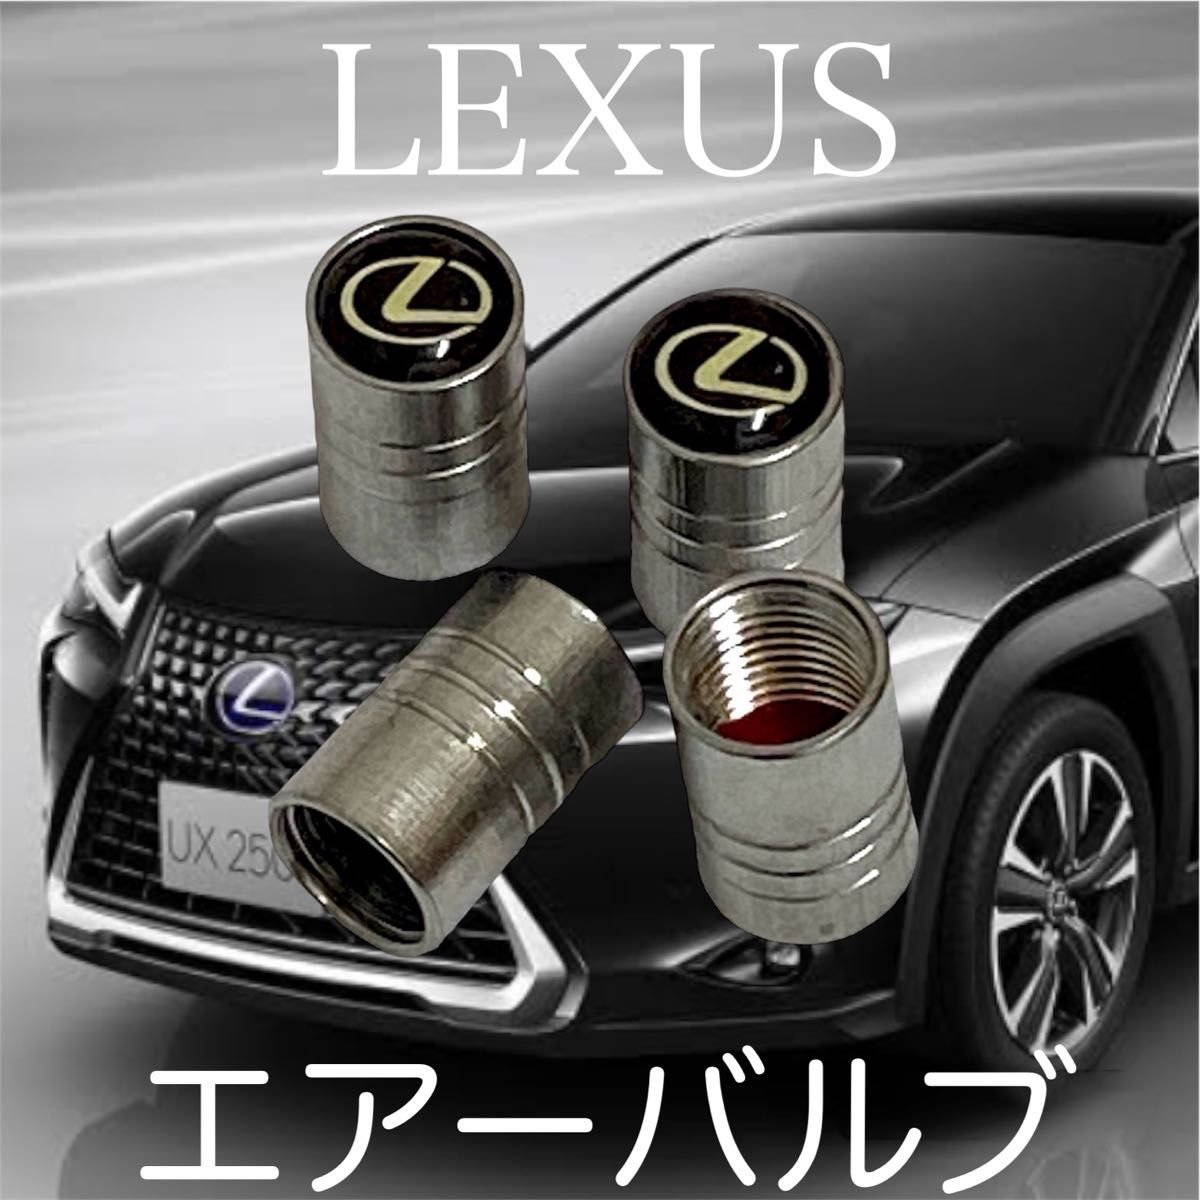 汎用 LEXUS エアーバルブ キャップ タイヤキャップ レクサス エアバルブ パーツ parts 